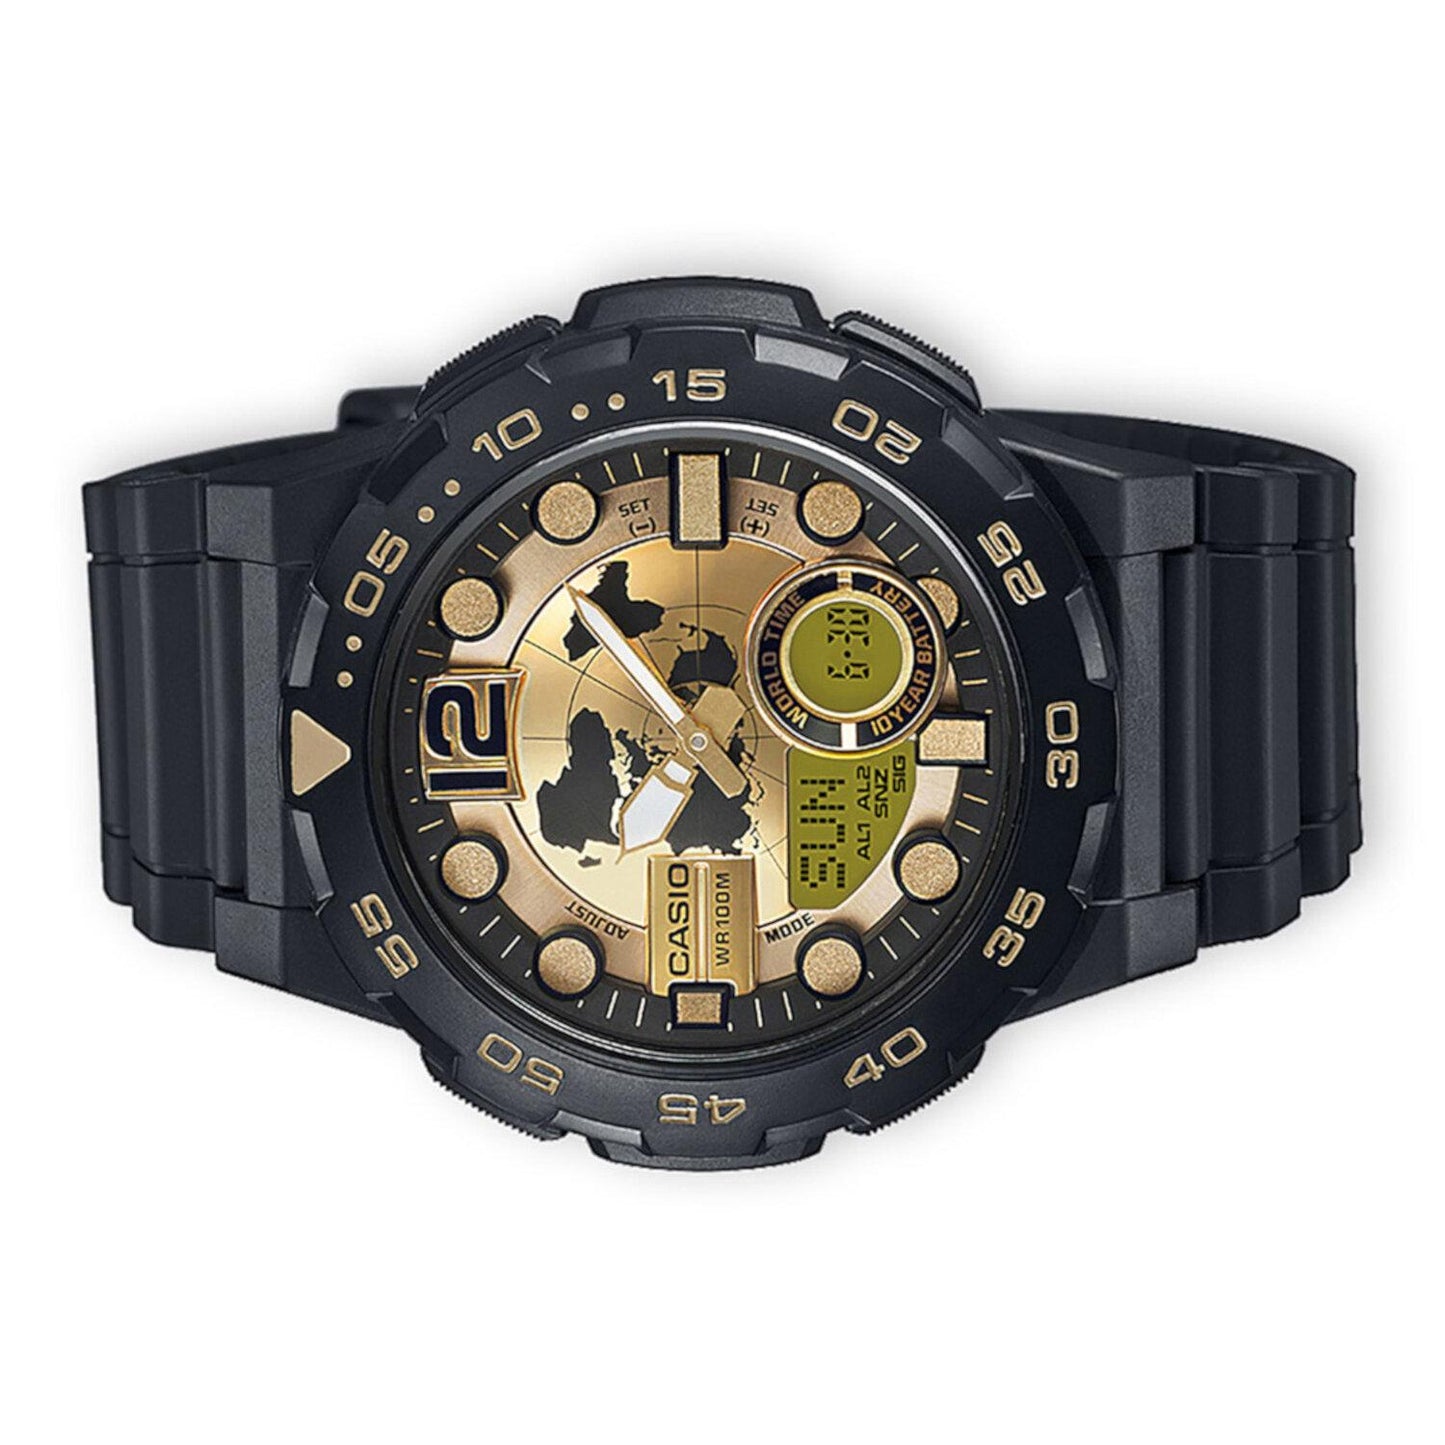 Reloj Casio AEQ-100BW-9AVCF World Time 10 Year Battery, Illuminator-Negro